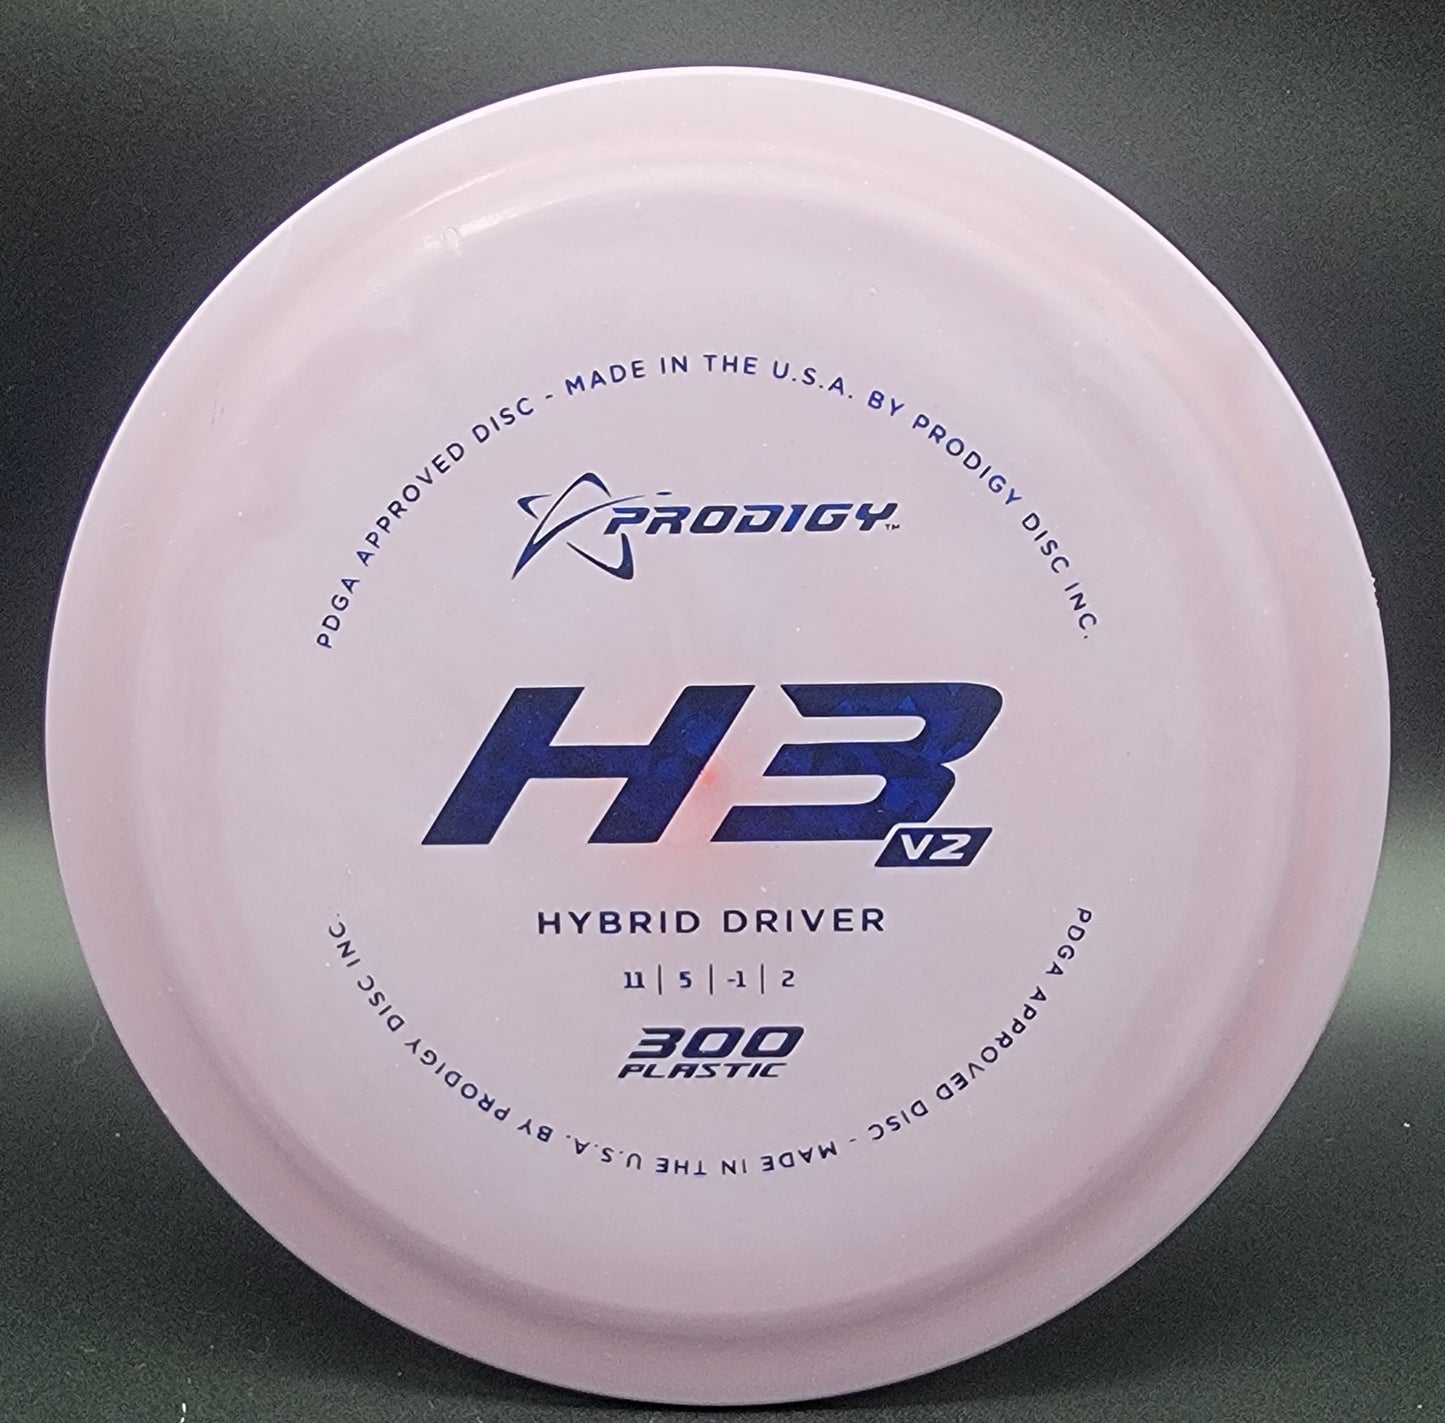 Prodigy H3v2 300G